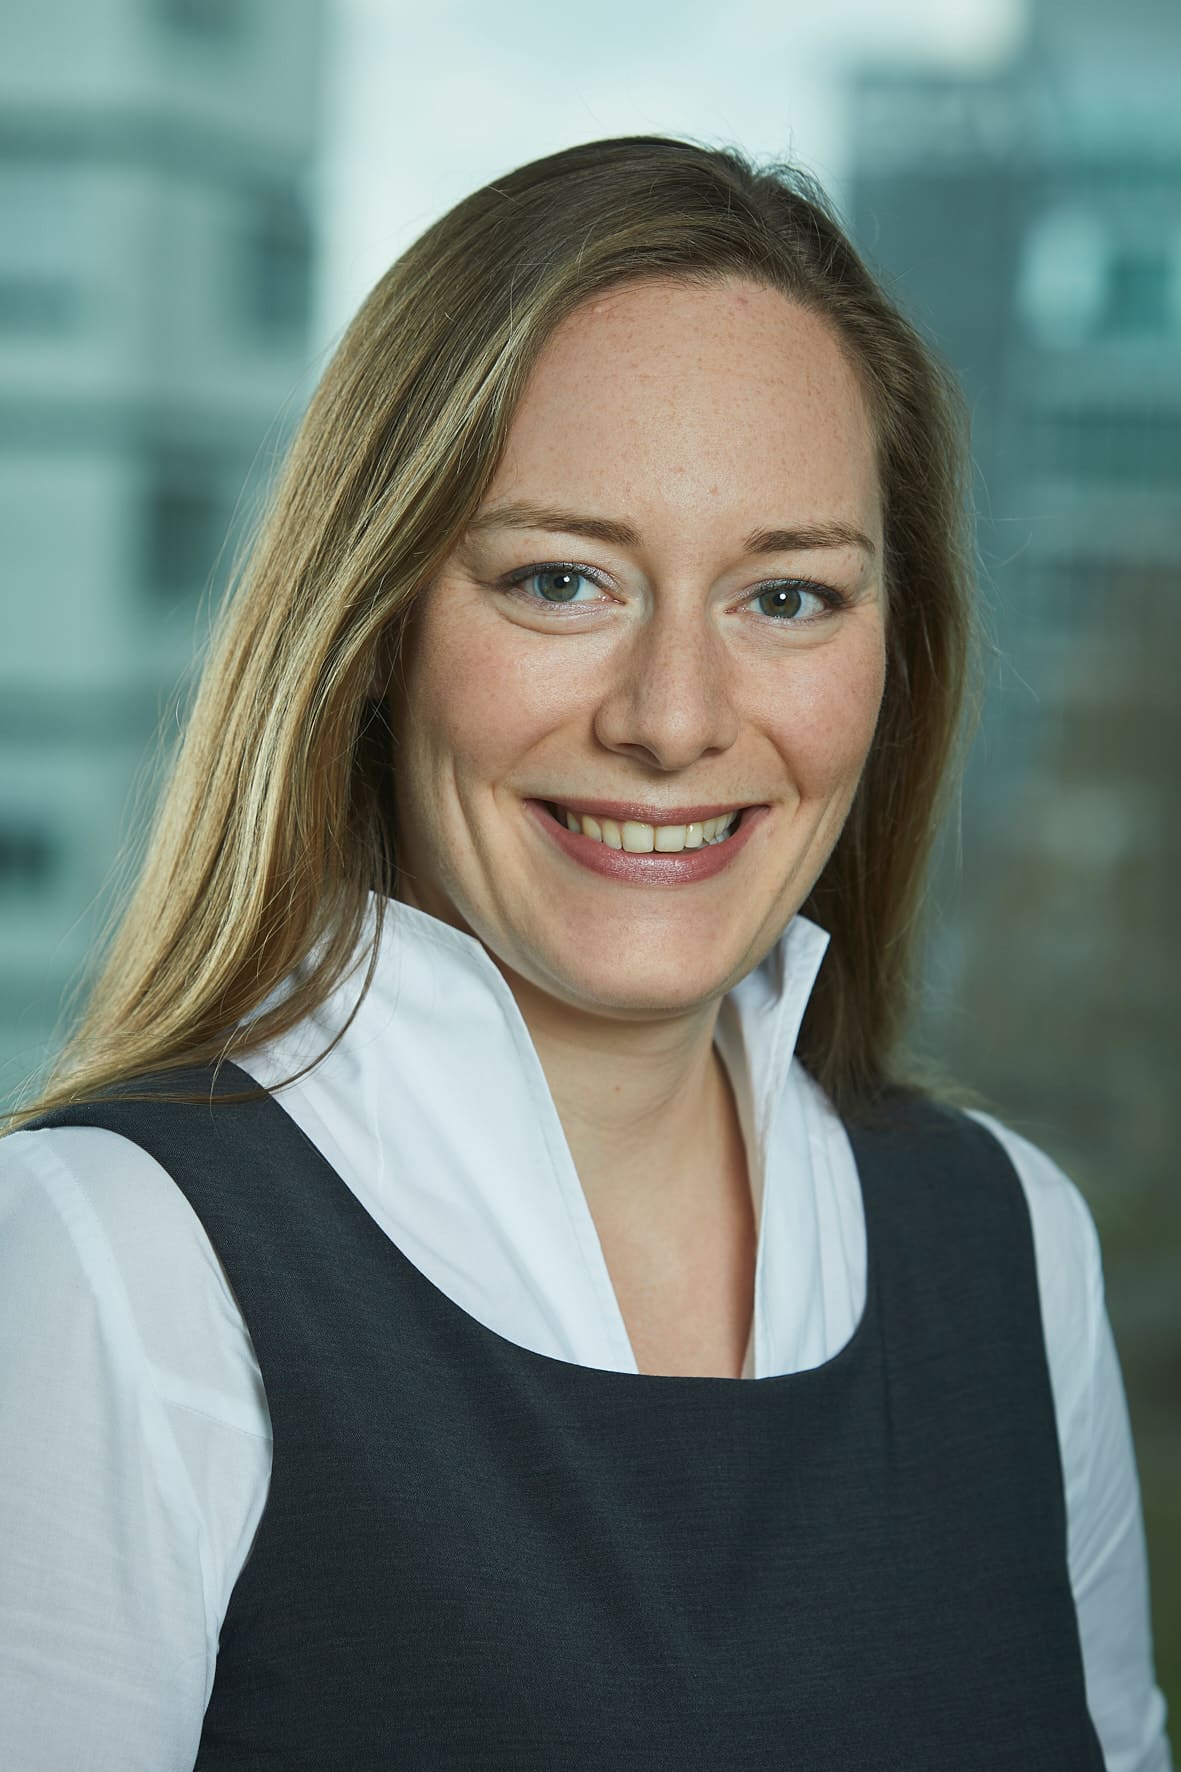 Anna Laura Riemann Portfolio Manager Leasing bei Unibail-Rodamco-Westfield